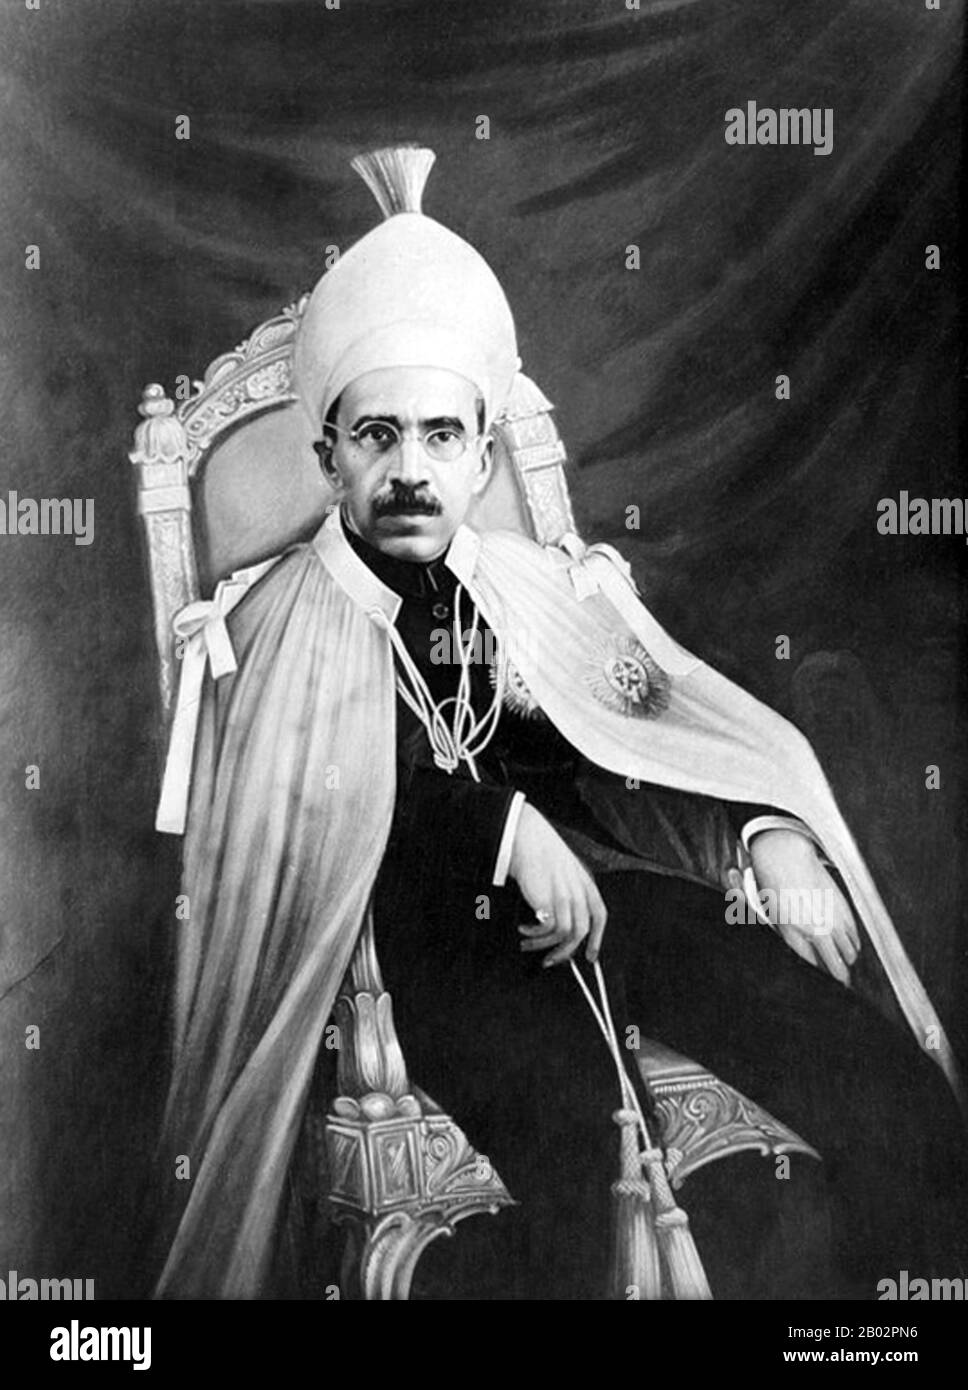 Nizam Sir Mir Osman Ali Khan Siddiqi Asaf Jah VII était le dernier Nizam (ou dirigeant) de l'État princier d'Hyderabad et de Berar. Il dirige Hyderabad entre 1911 et 1948, jusqu'à ce qu'il soit annexé par l'Inde. Il a été stylisé son Altesse Exalted Le Nizam de Hyderabad. Pendant ses jours comme Nizam, il a été réputé être l'homme le plus riche du monde, ayant une fortune estimée à 2 milliards de dollars au début des années 1940. Le Nizam est largement considéré comme l'homme le plus riche d'Asie du Sud jusqu'à sa mort en 1967. Banque D'Images